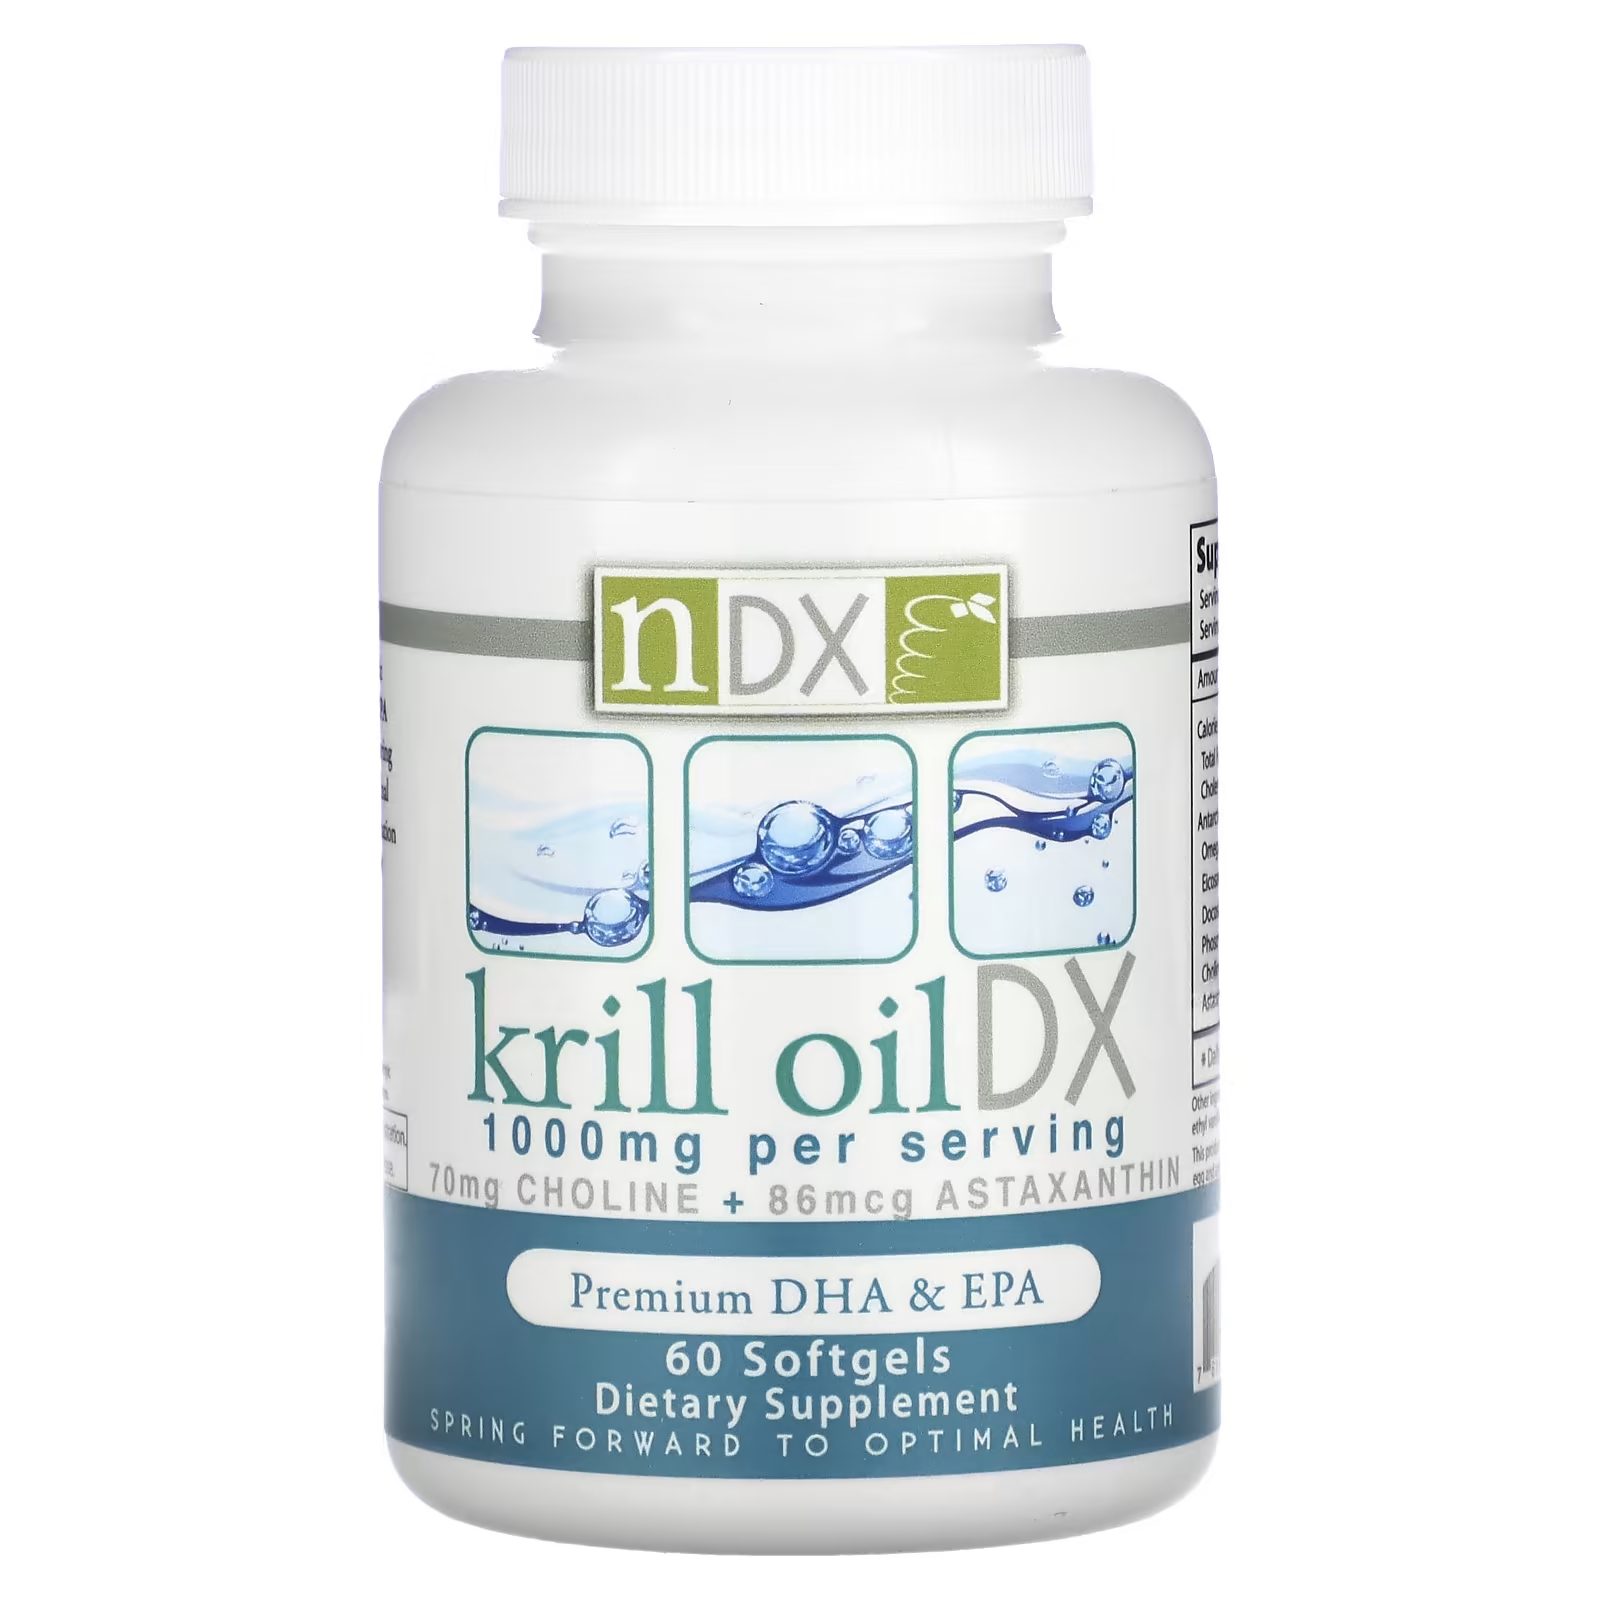 Пищевая добавка Natural Dynamix Krill Oil DX Premium DHA и EPA 1000 мг, 60 мягких таблеток комплекс bonalin epa dha 60 мягких таблеток soria natural